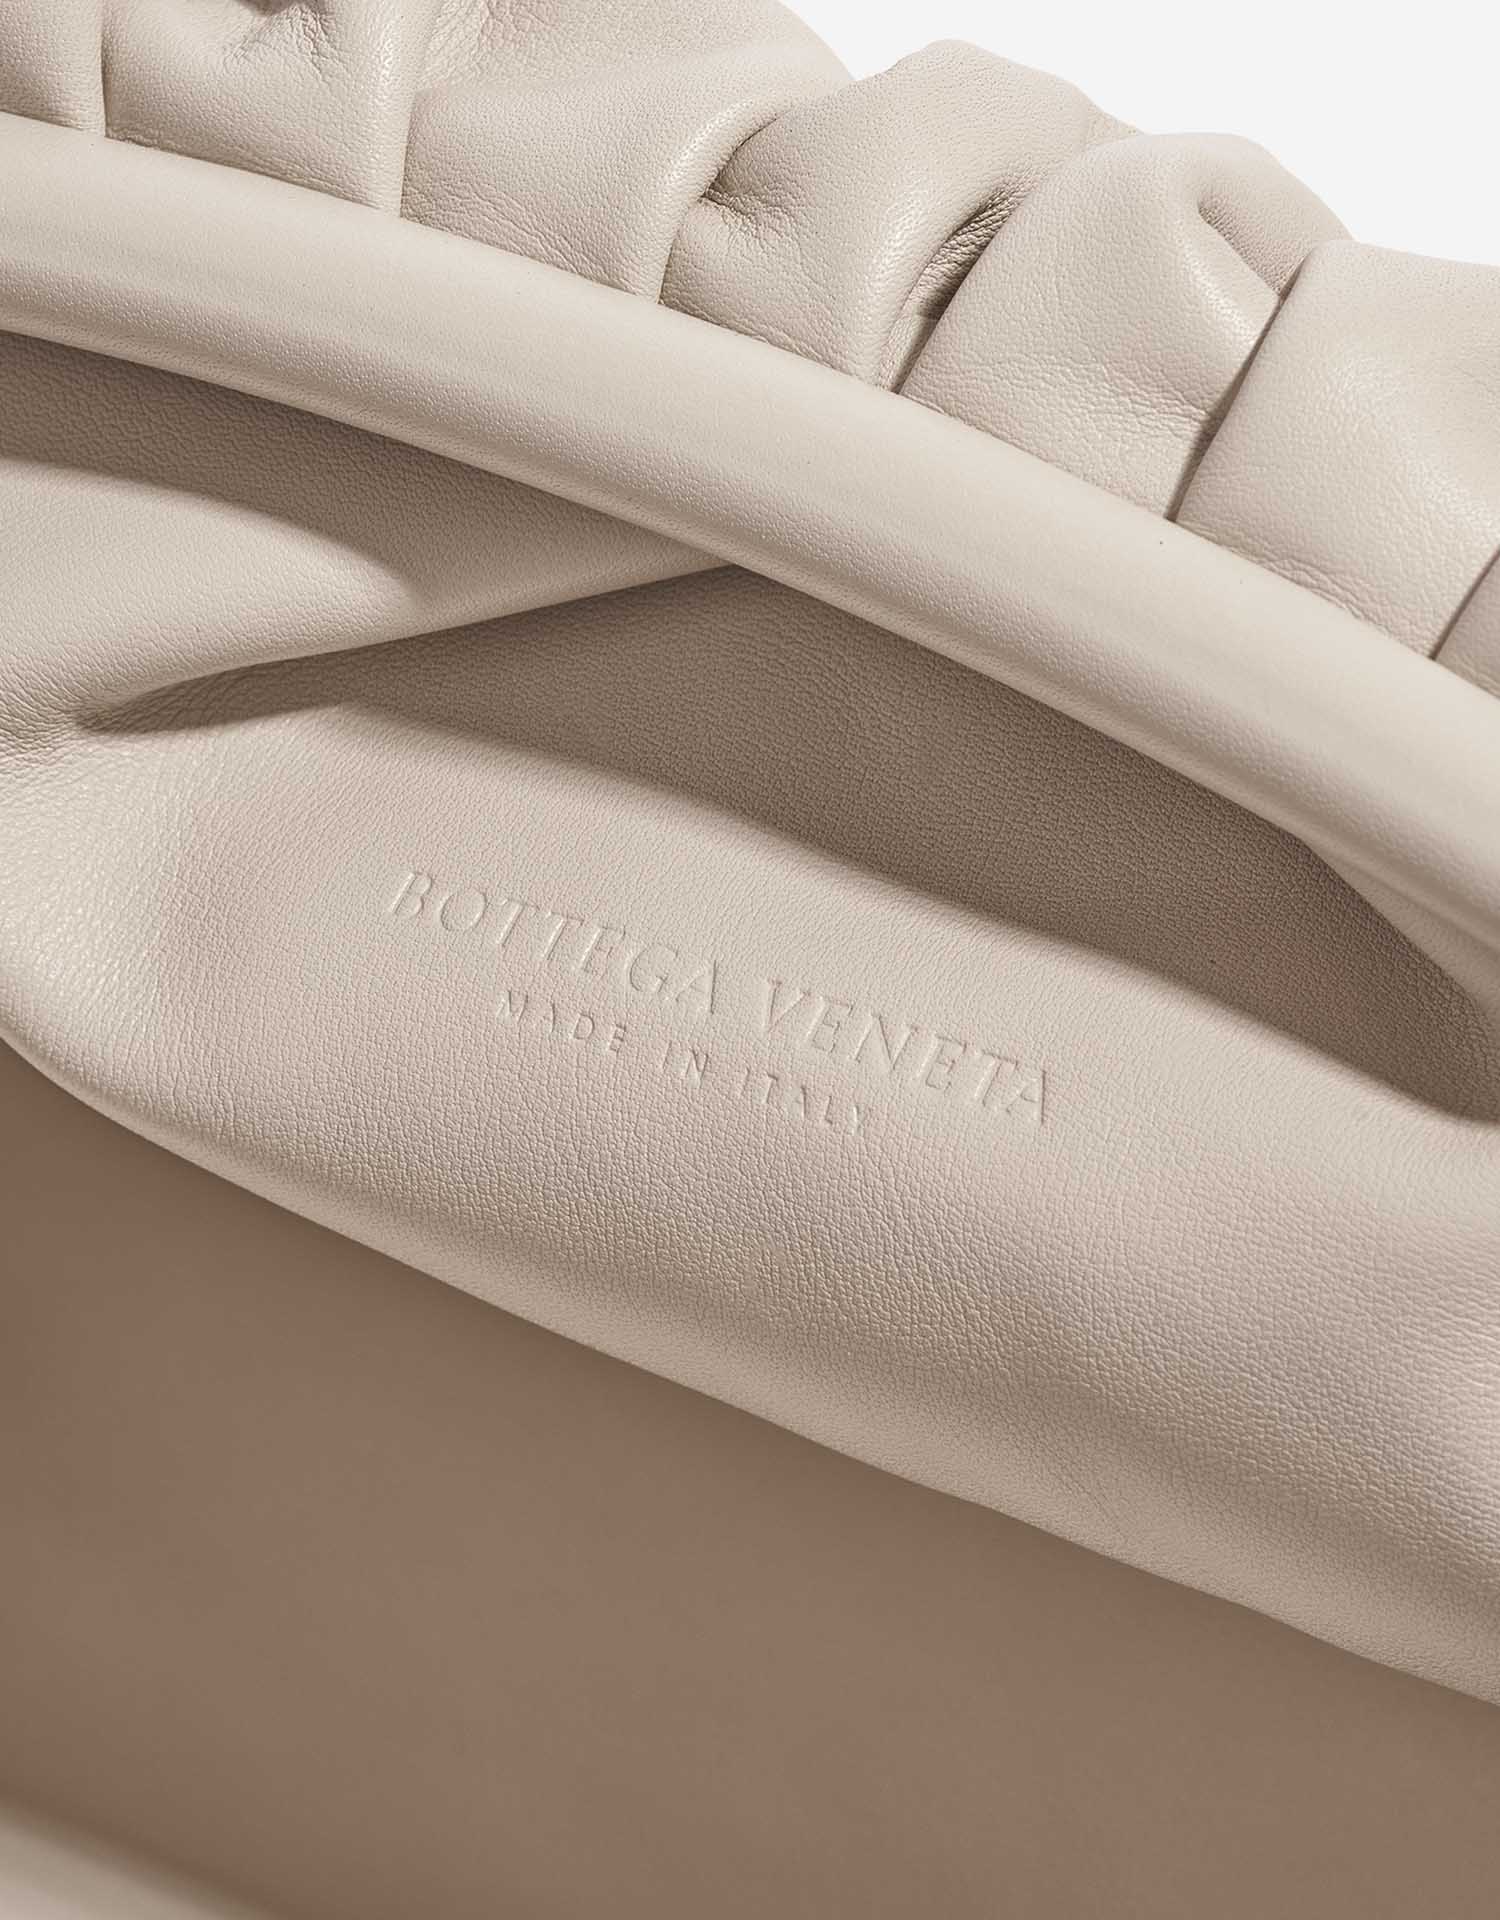 Pre-owned Bottega Veneta bag Pouch Calf Plaster Beige Logo | Sell your designer bag on Saclab.com